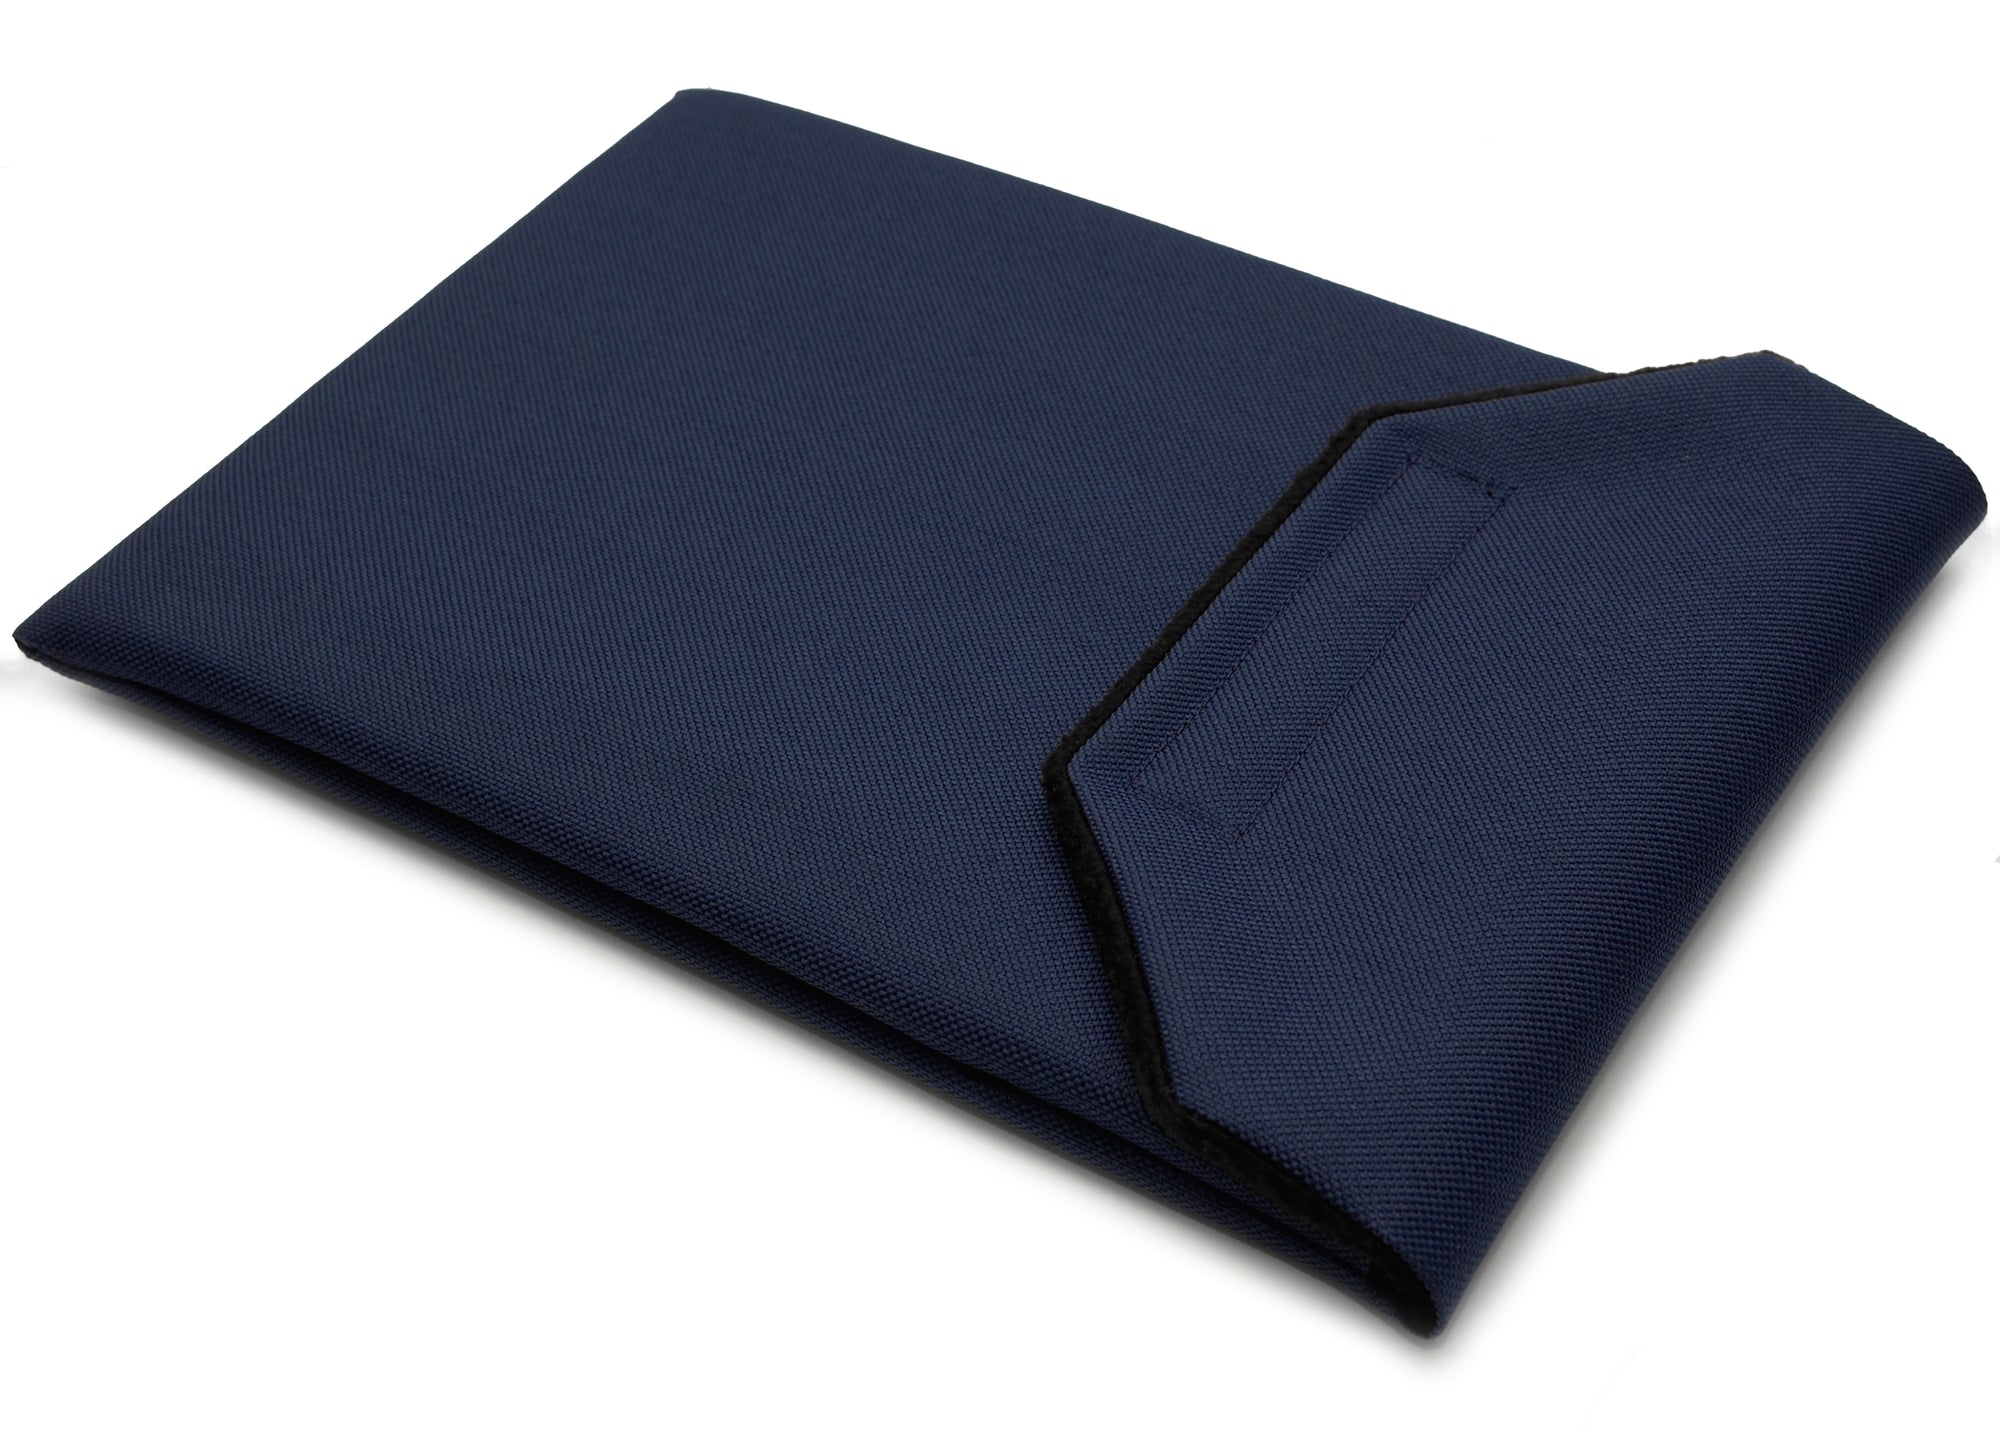 Ipad air 4 sleeve case - everyday canvas - navy blue